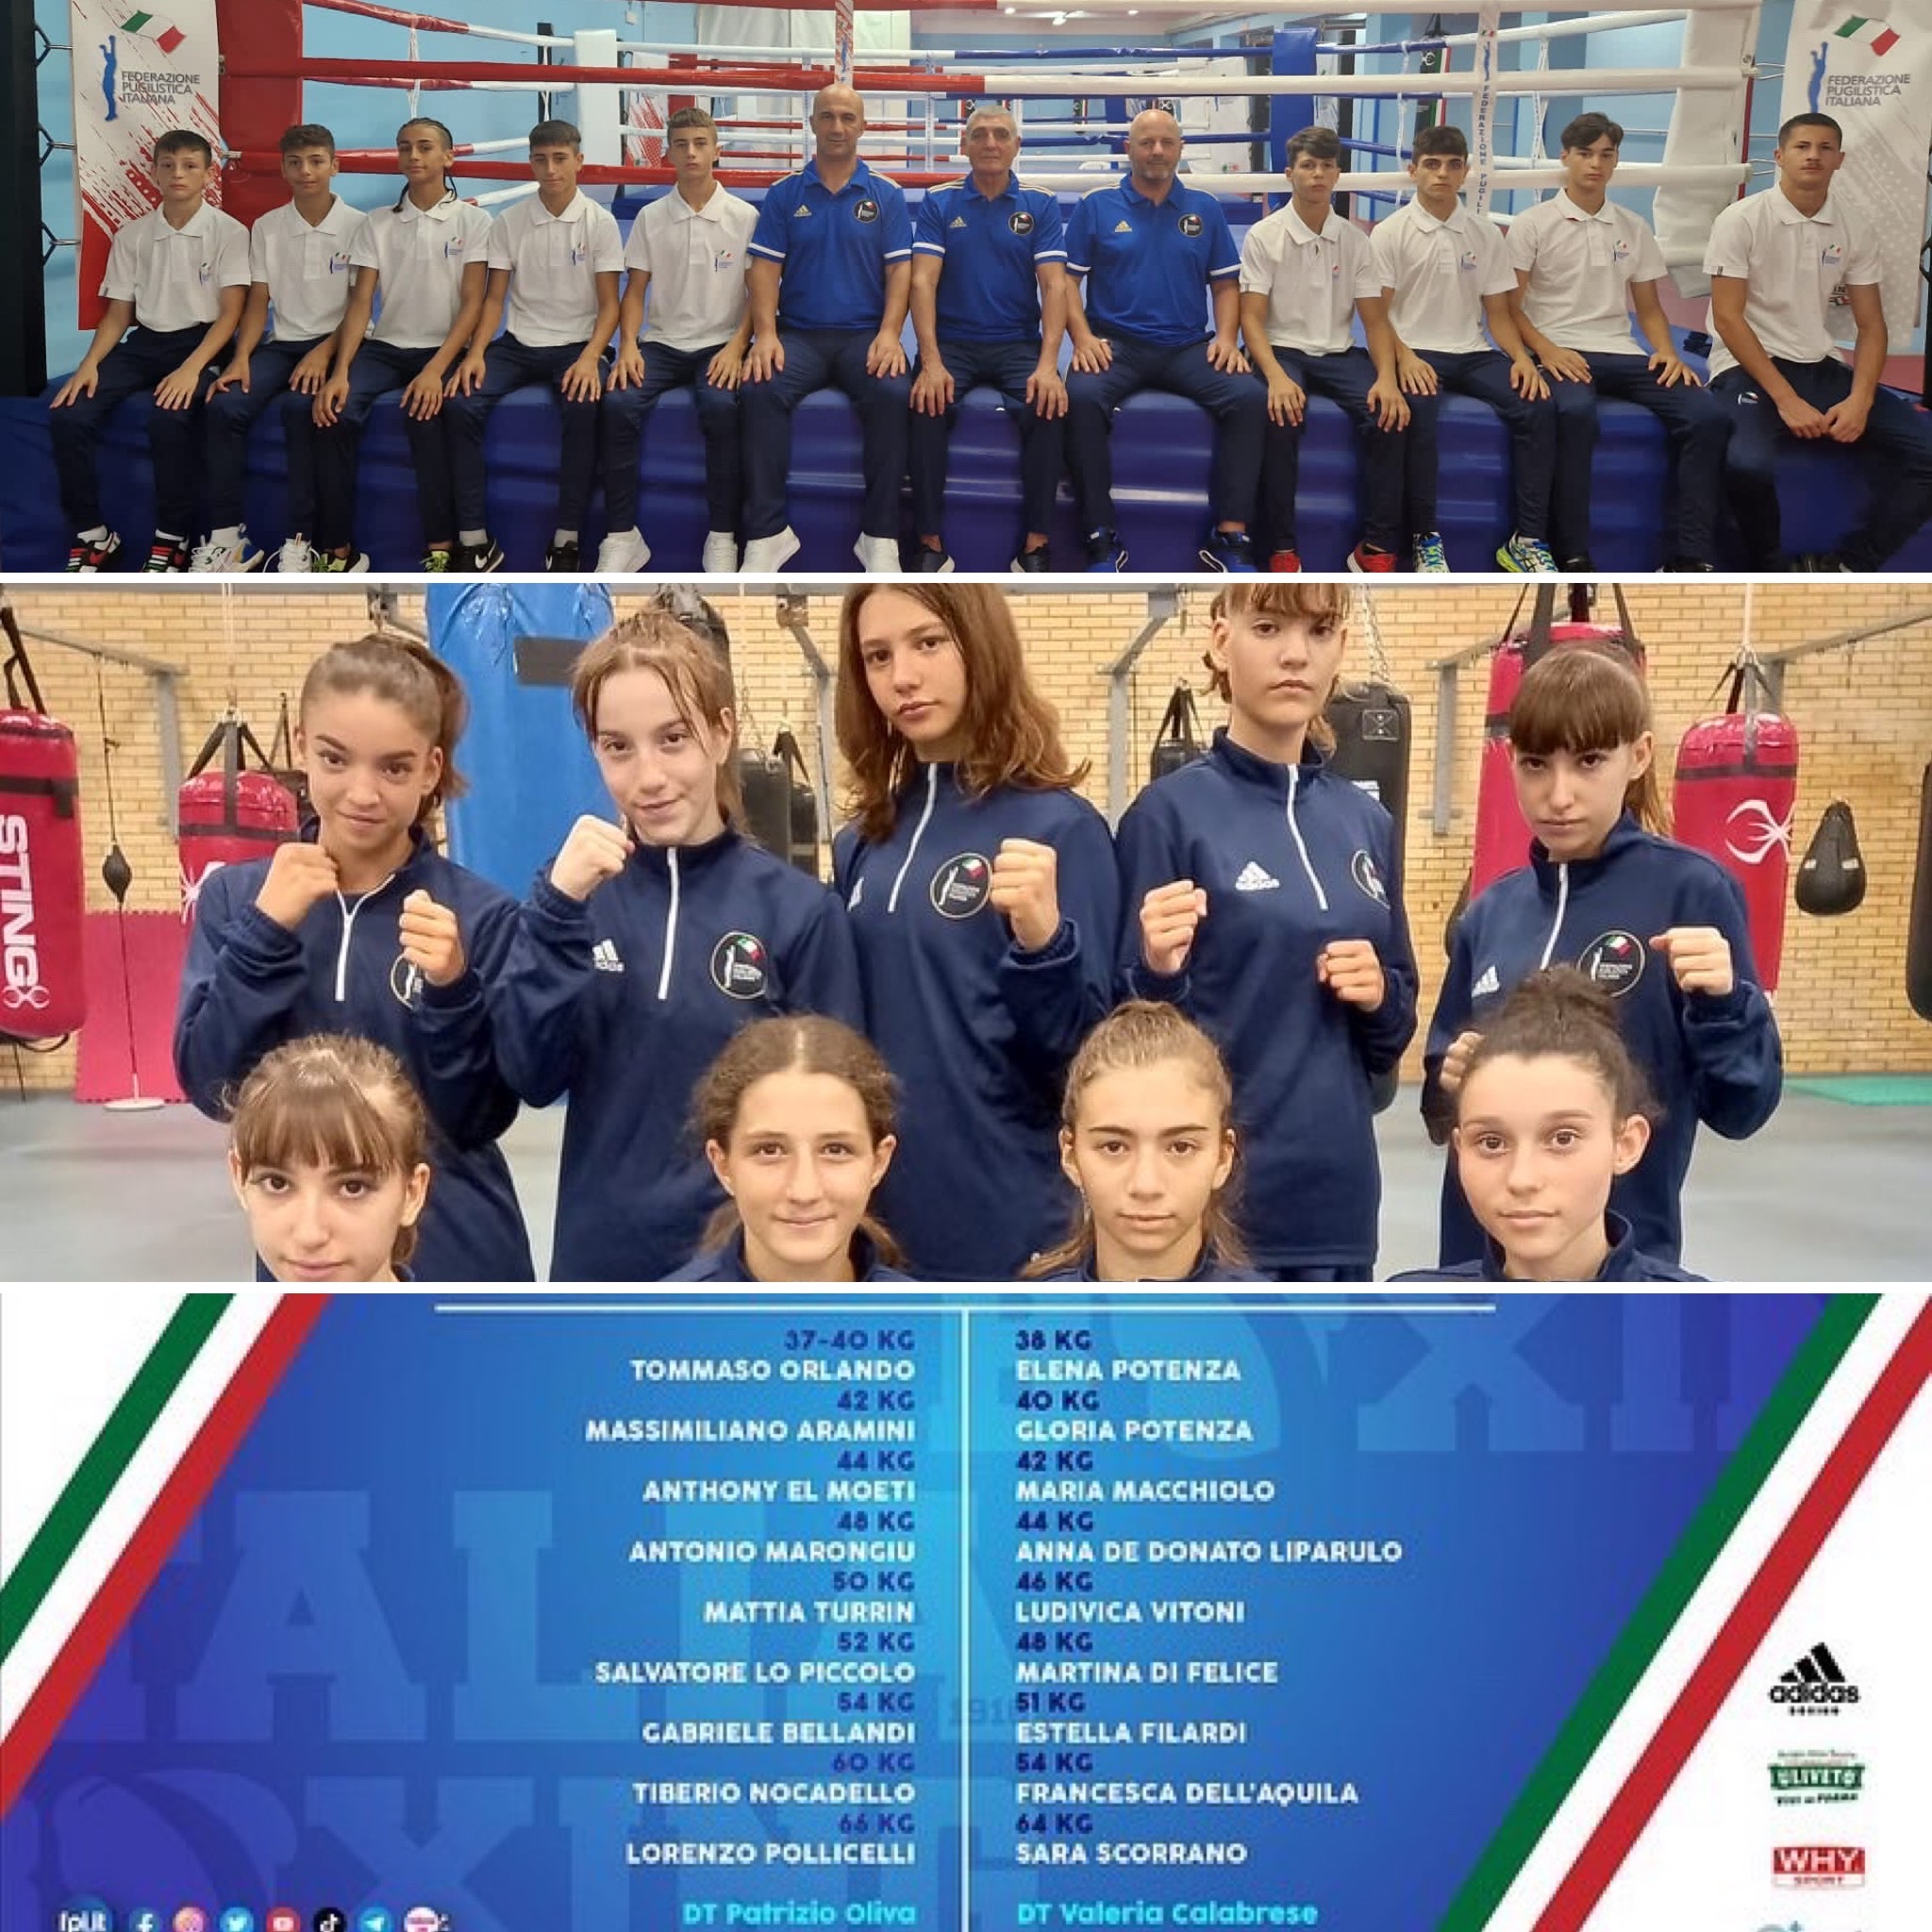 Europei SchoolBoy/Girl Erzurum 2022 - Italia Boxing Team in Turchia, il 12 agosto il via alla kermesse